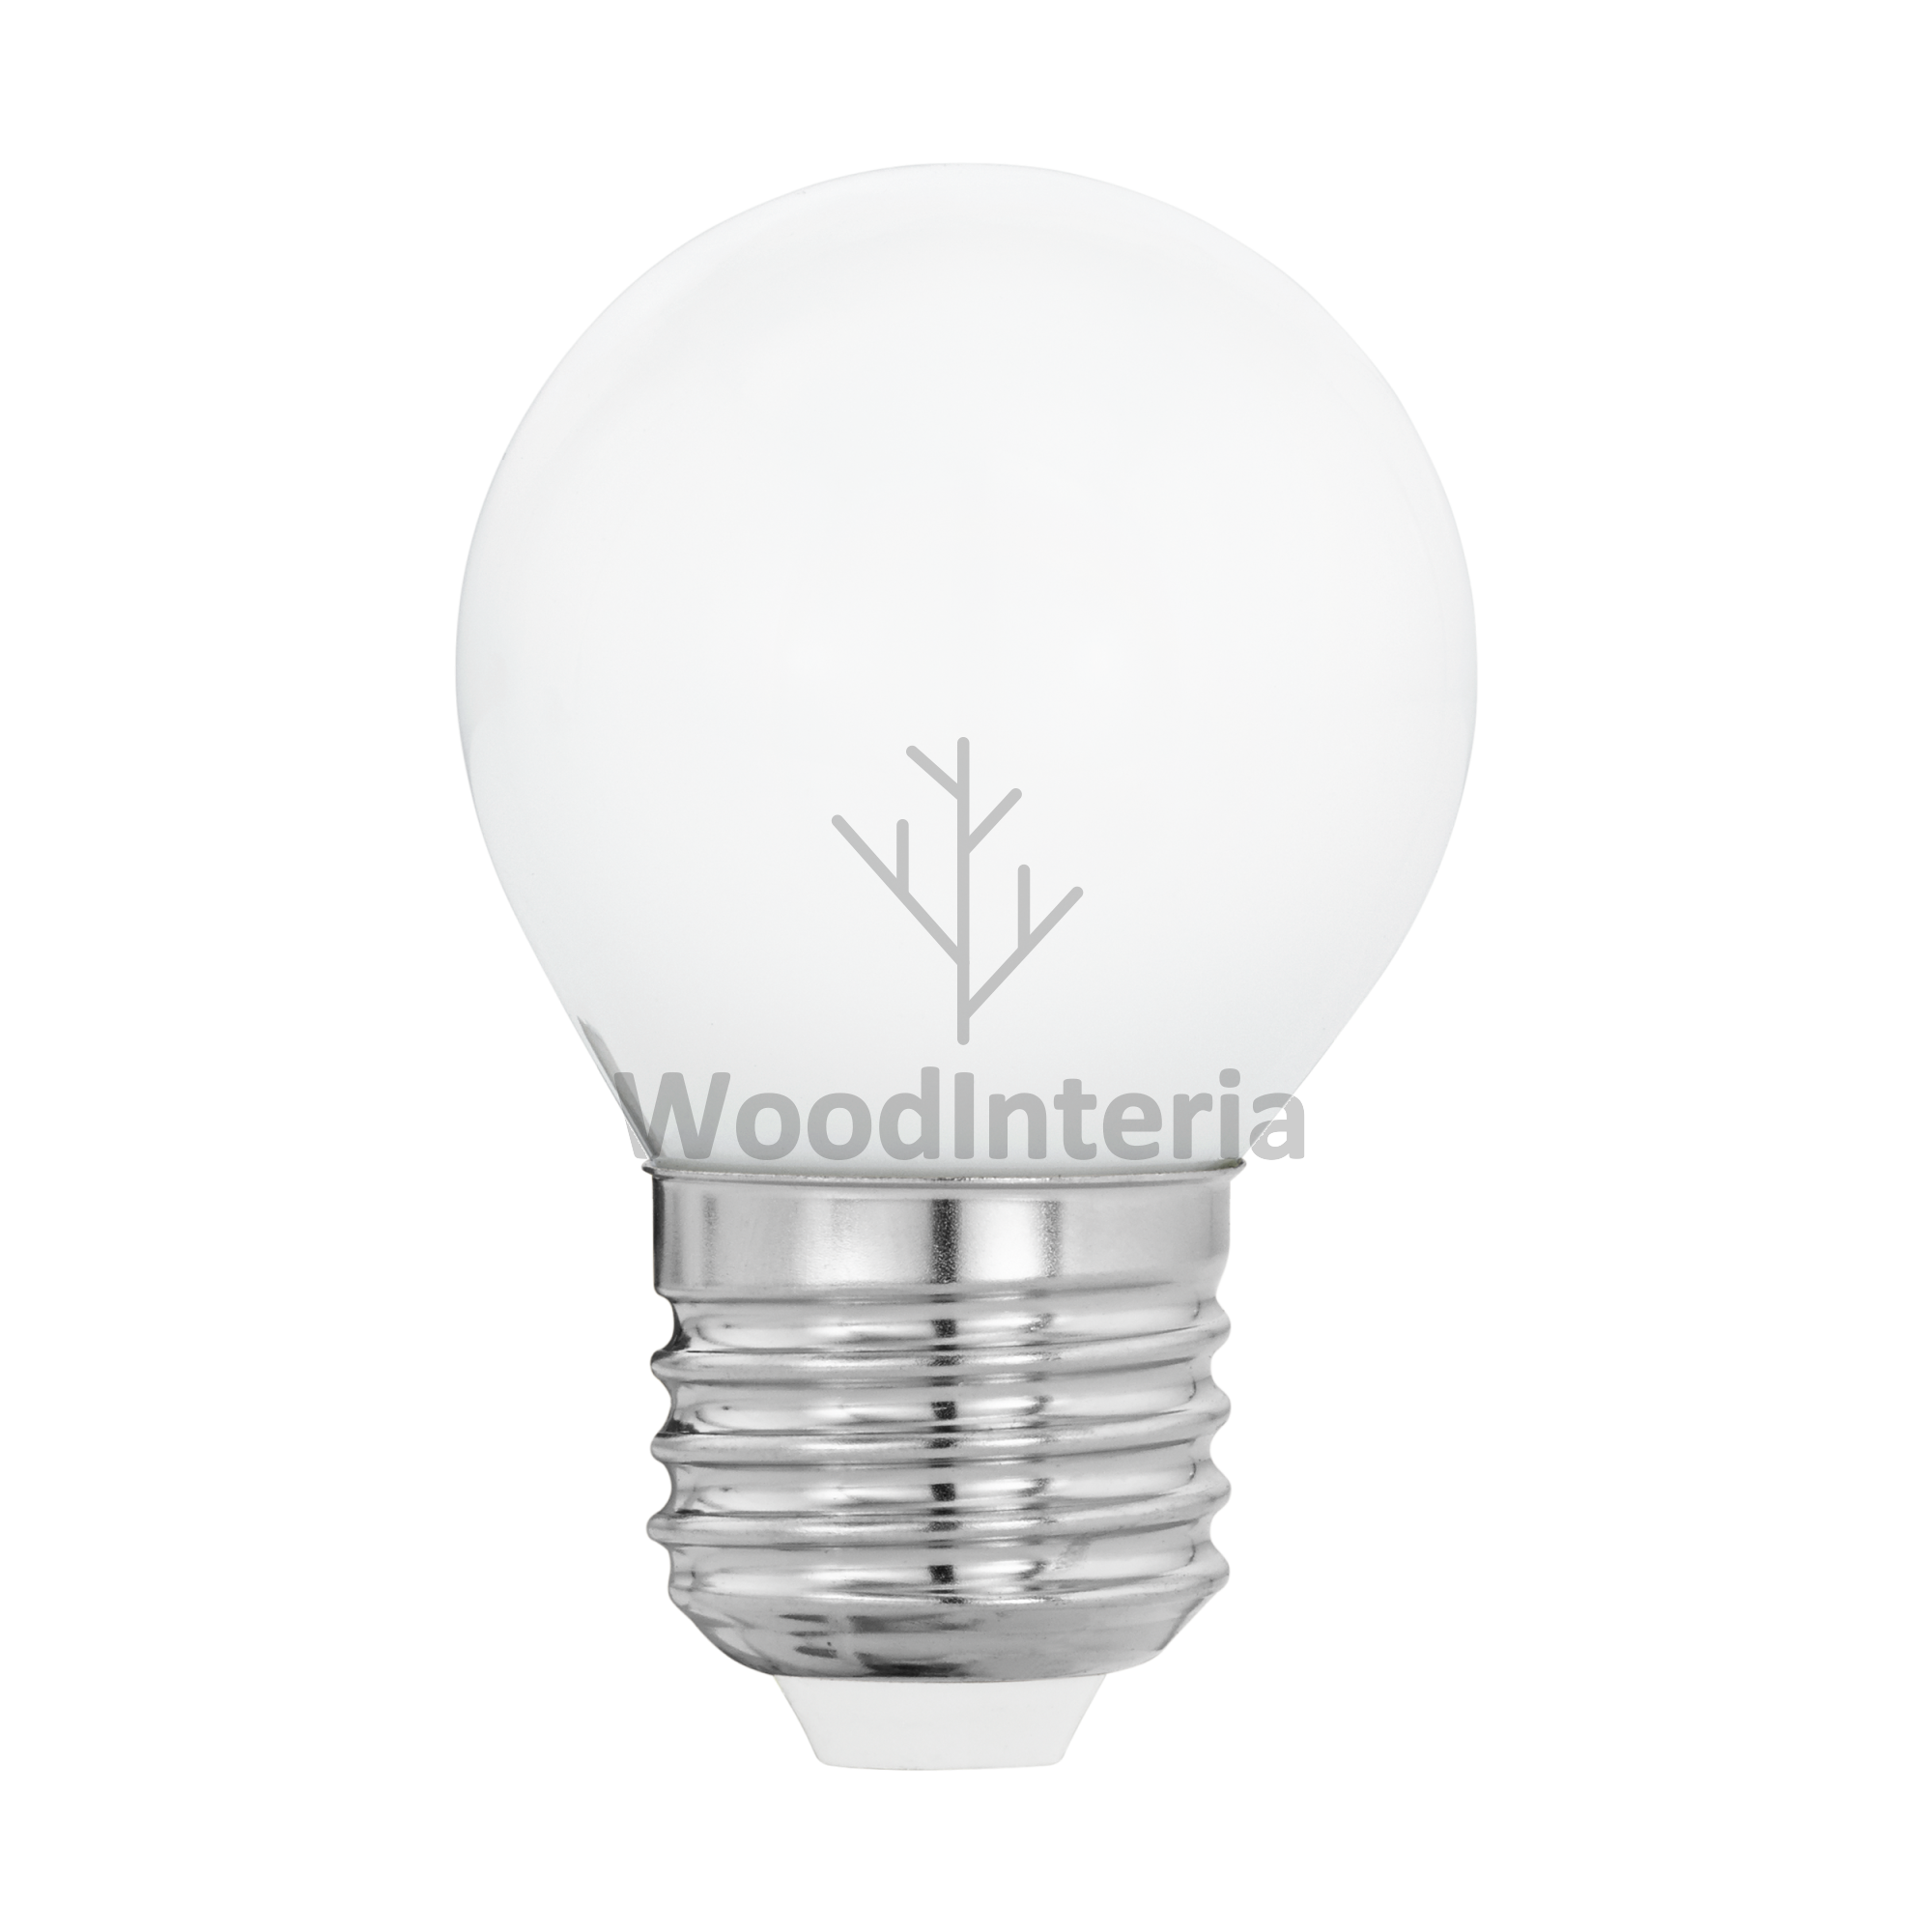 фото лампочка white bulb #10 led в скандинавском интерьере лофт эко | WoodInteria